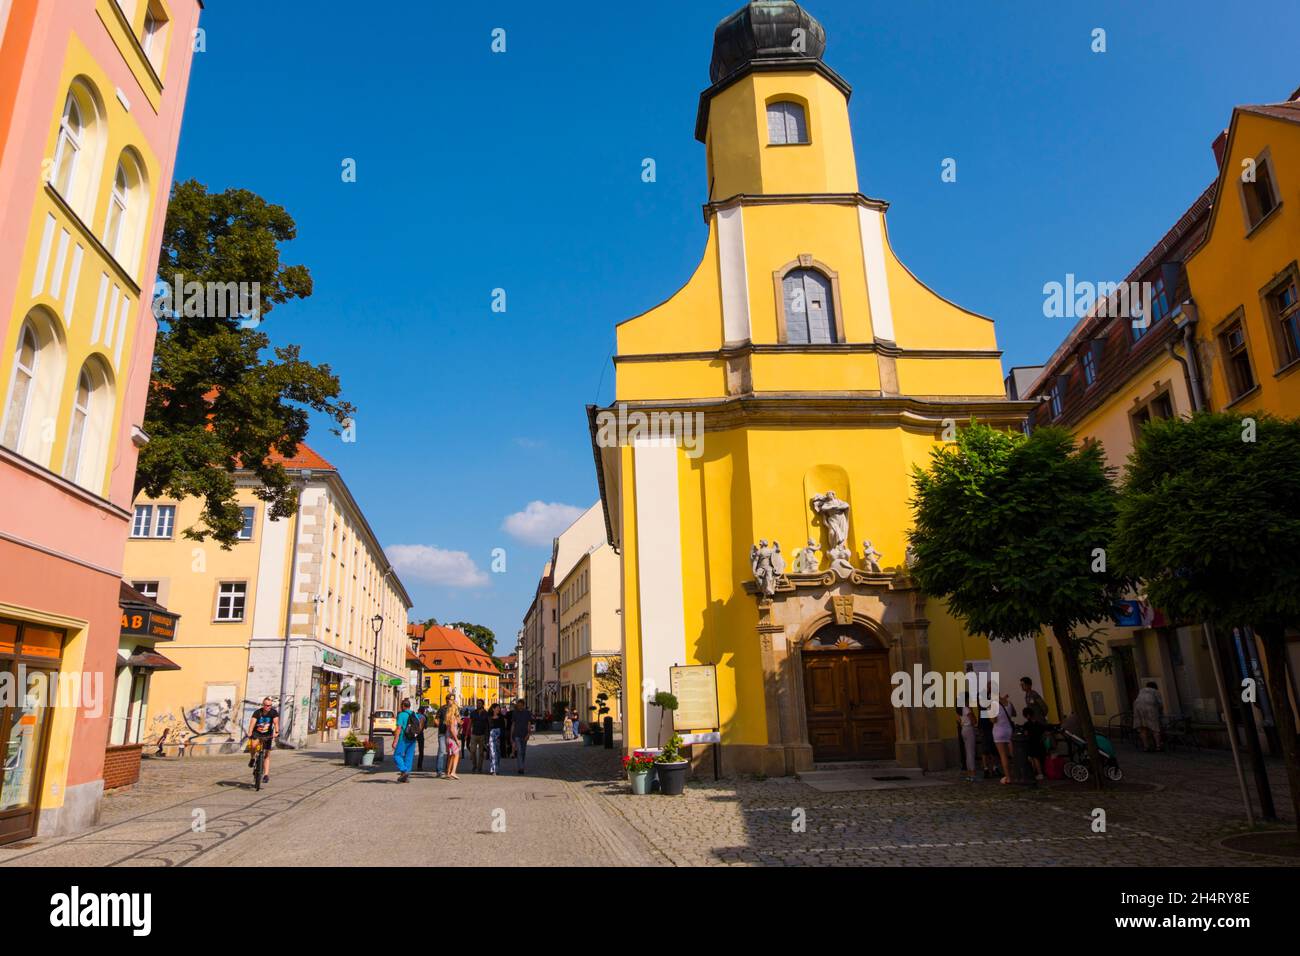 1 Maja, main pedestrian street, old town, Jelenia Gora, Poland Stock Photo